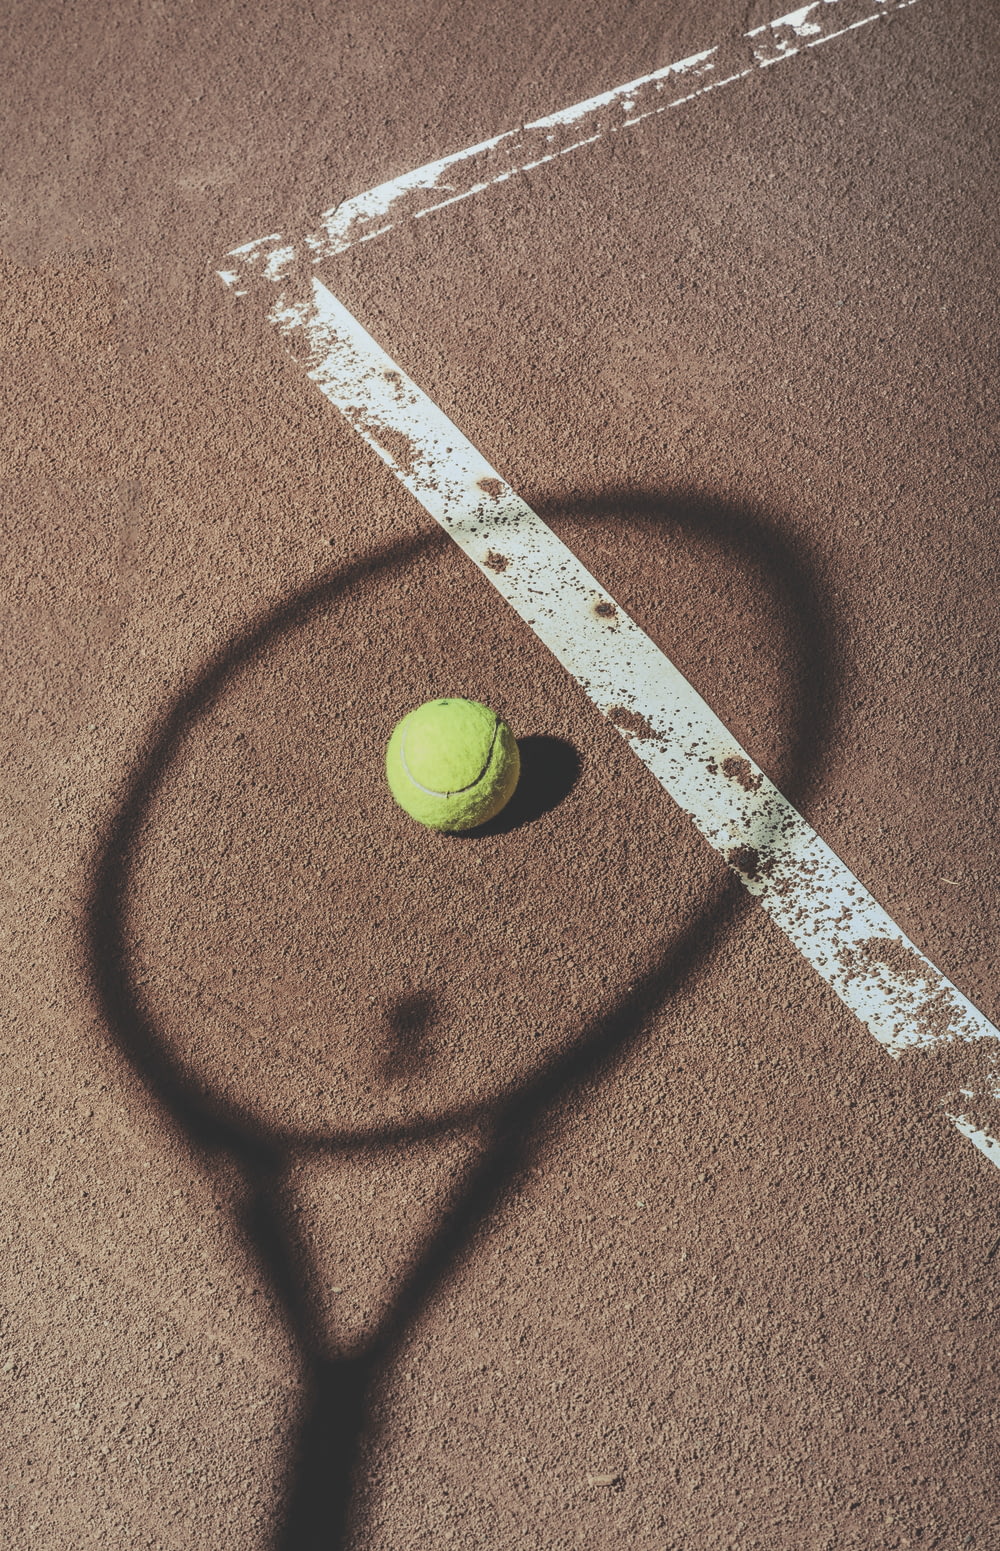 green tennis ball